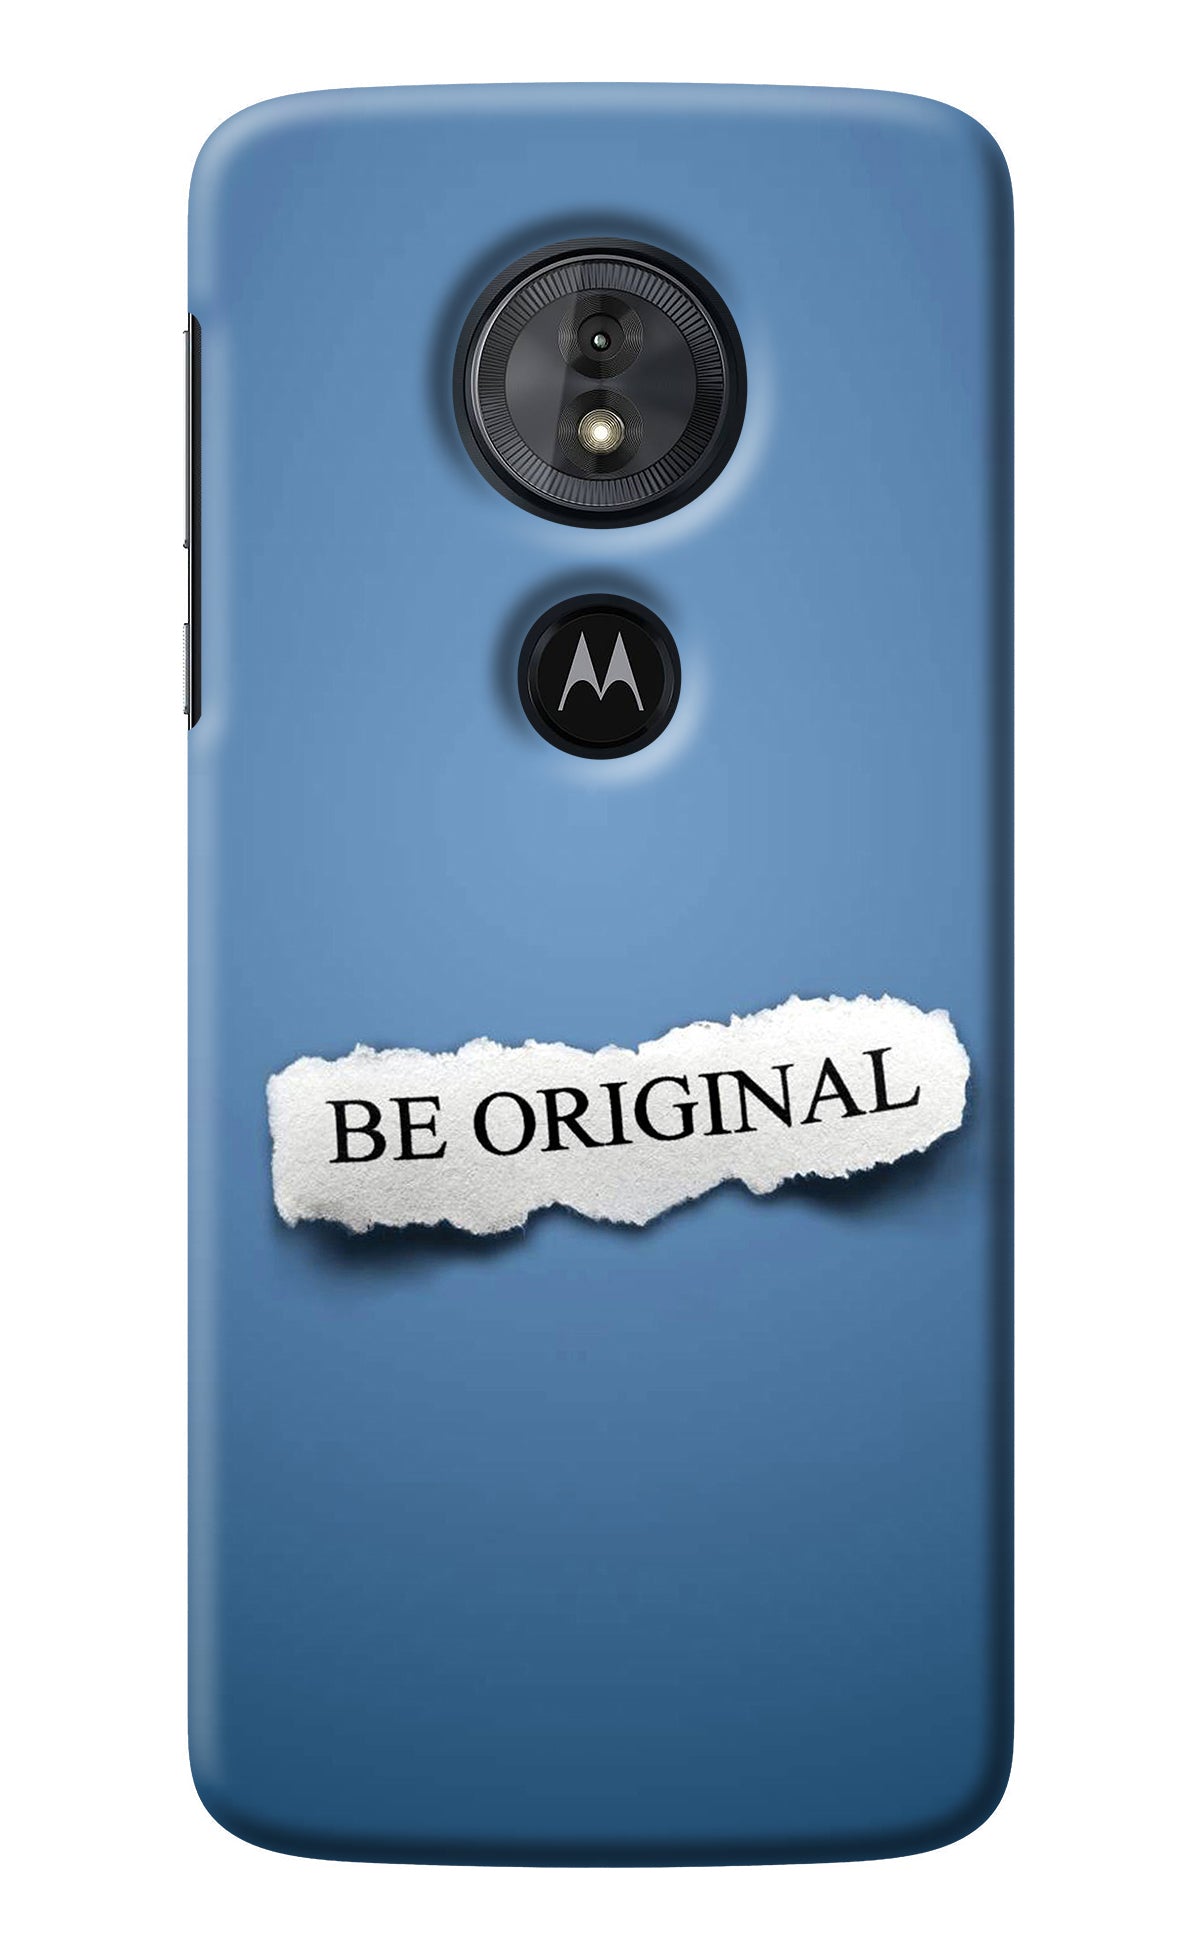 Be Original Moto G6 Play Back Cover